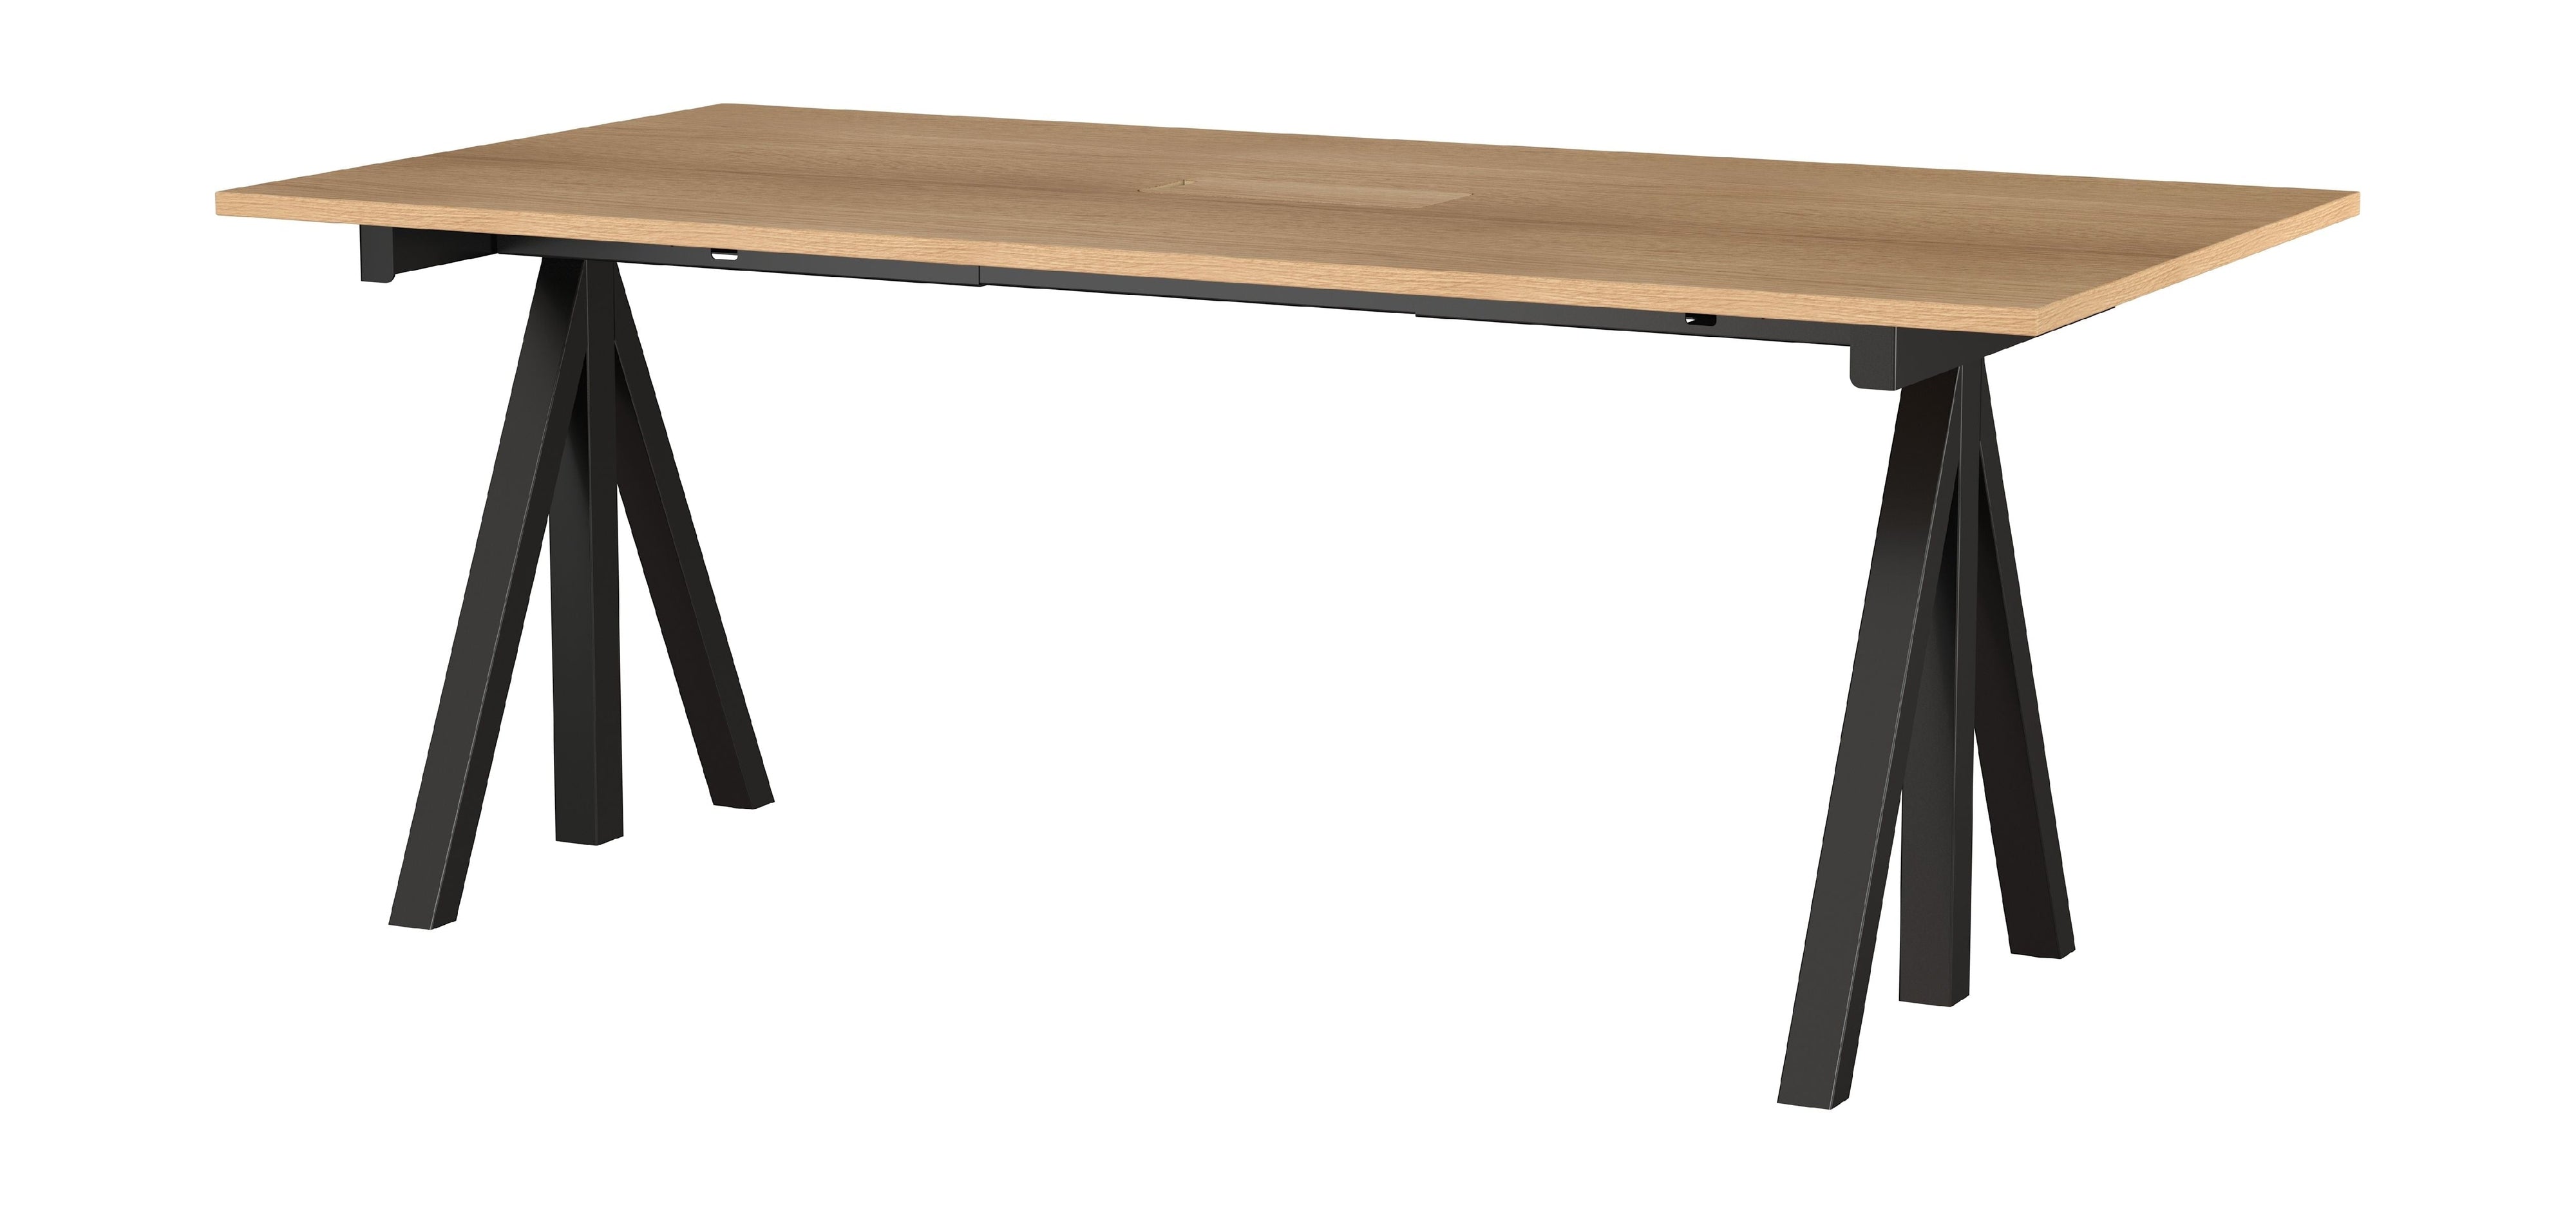 String Furniture Korkeuden säädettävä työtaulukko 90x180 cm, tammi/musta